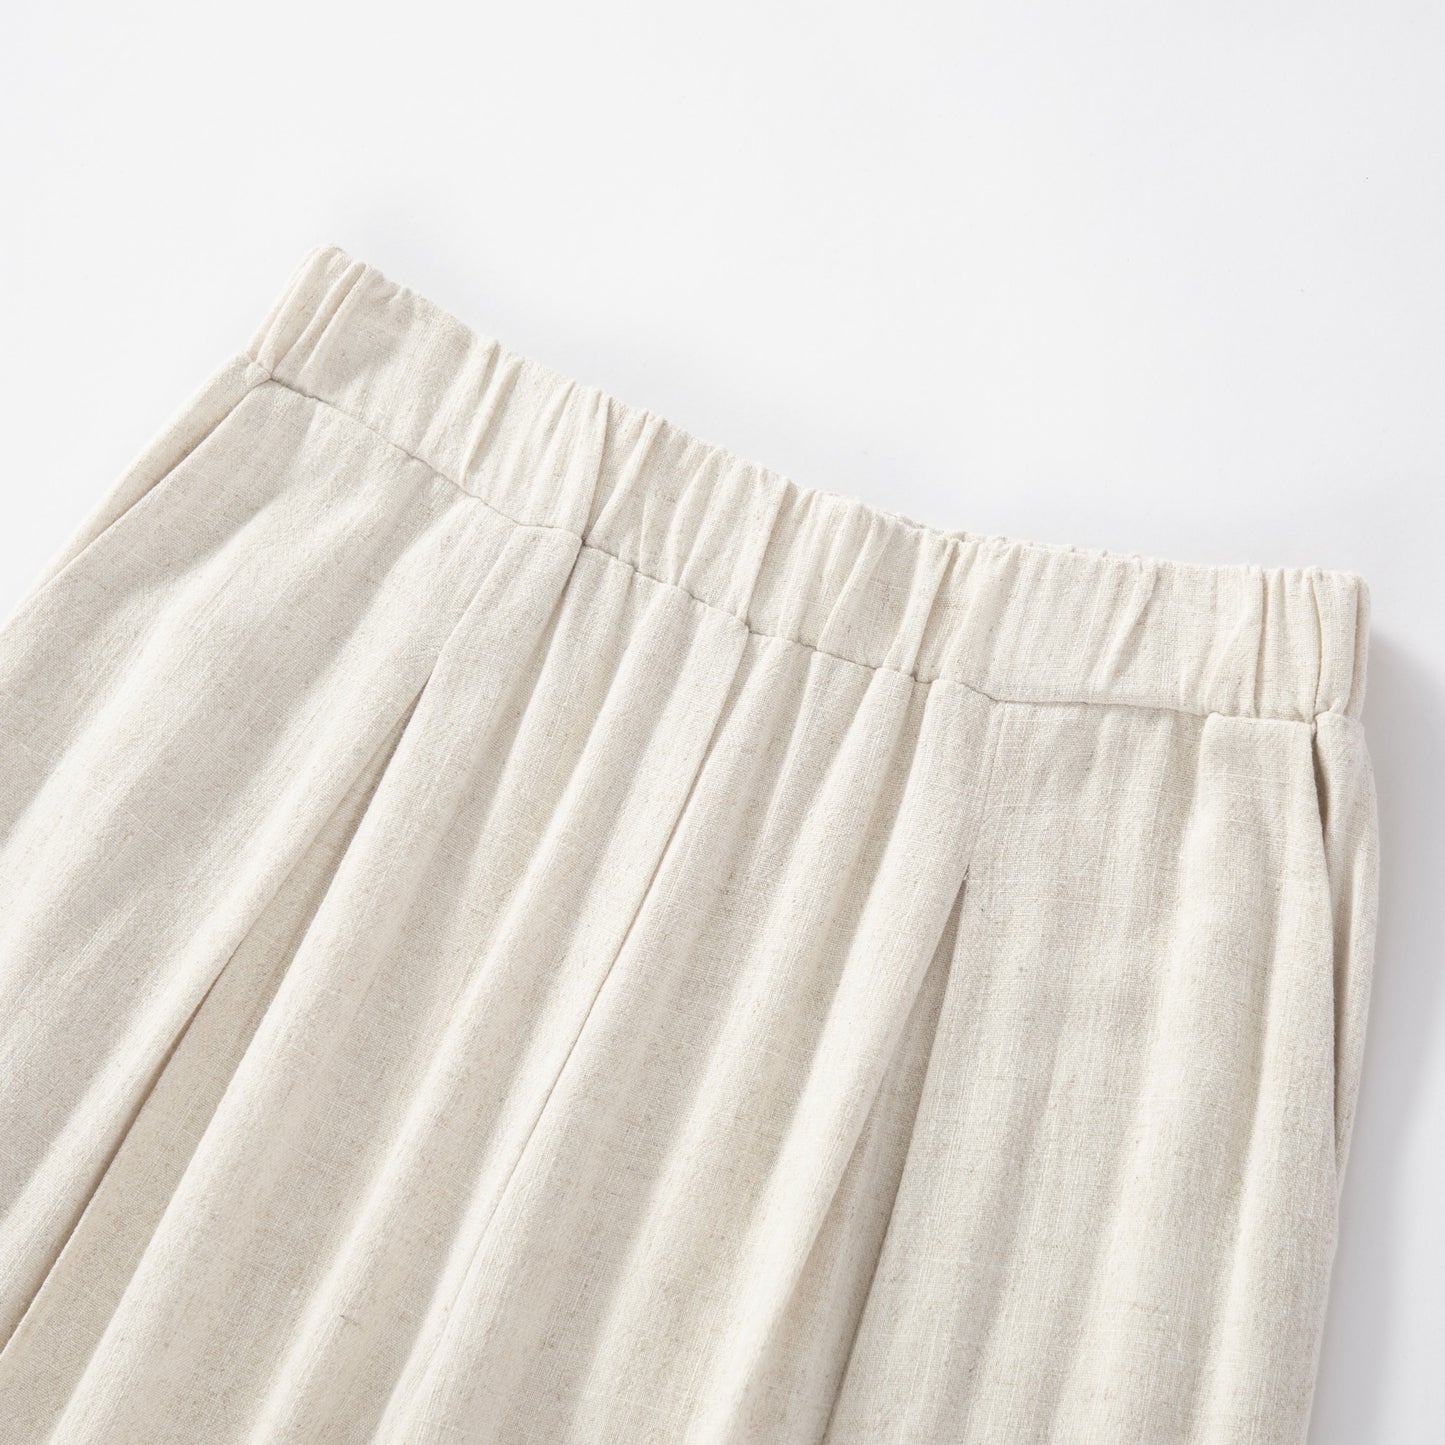 Pantalon ample en lin soyeux à taille haute et coupe décontractée.